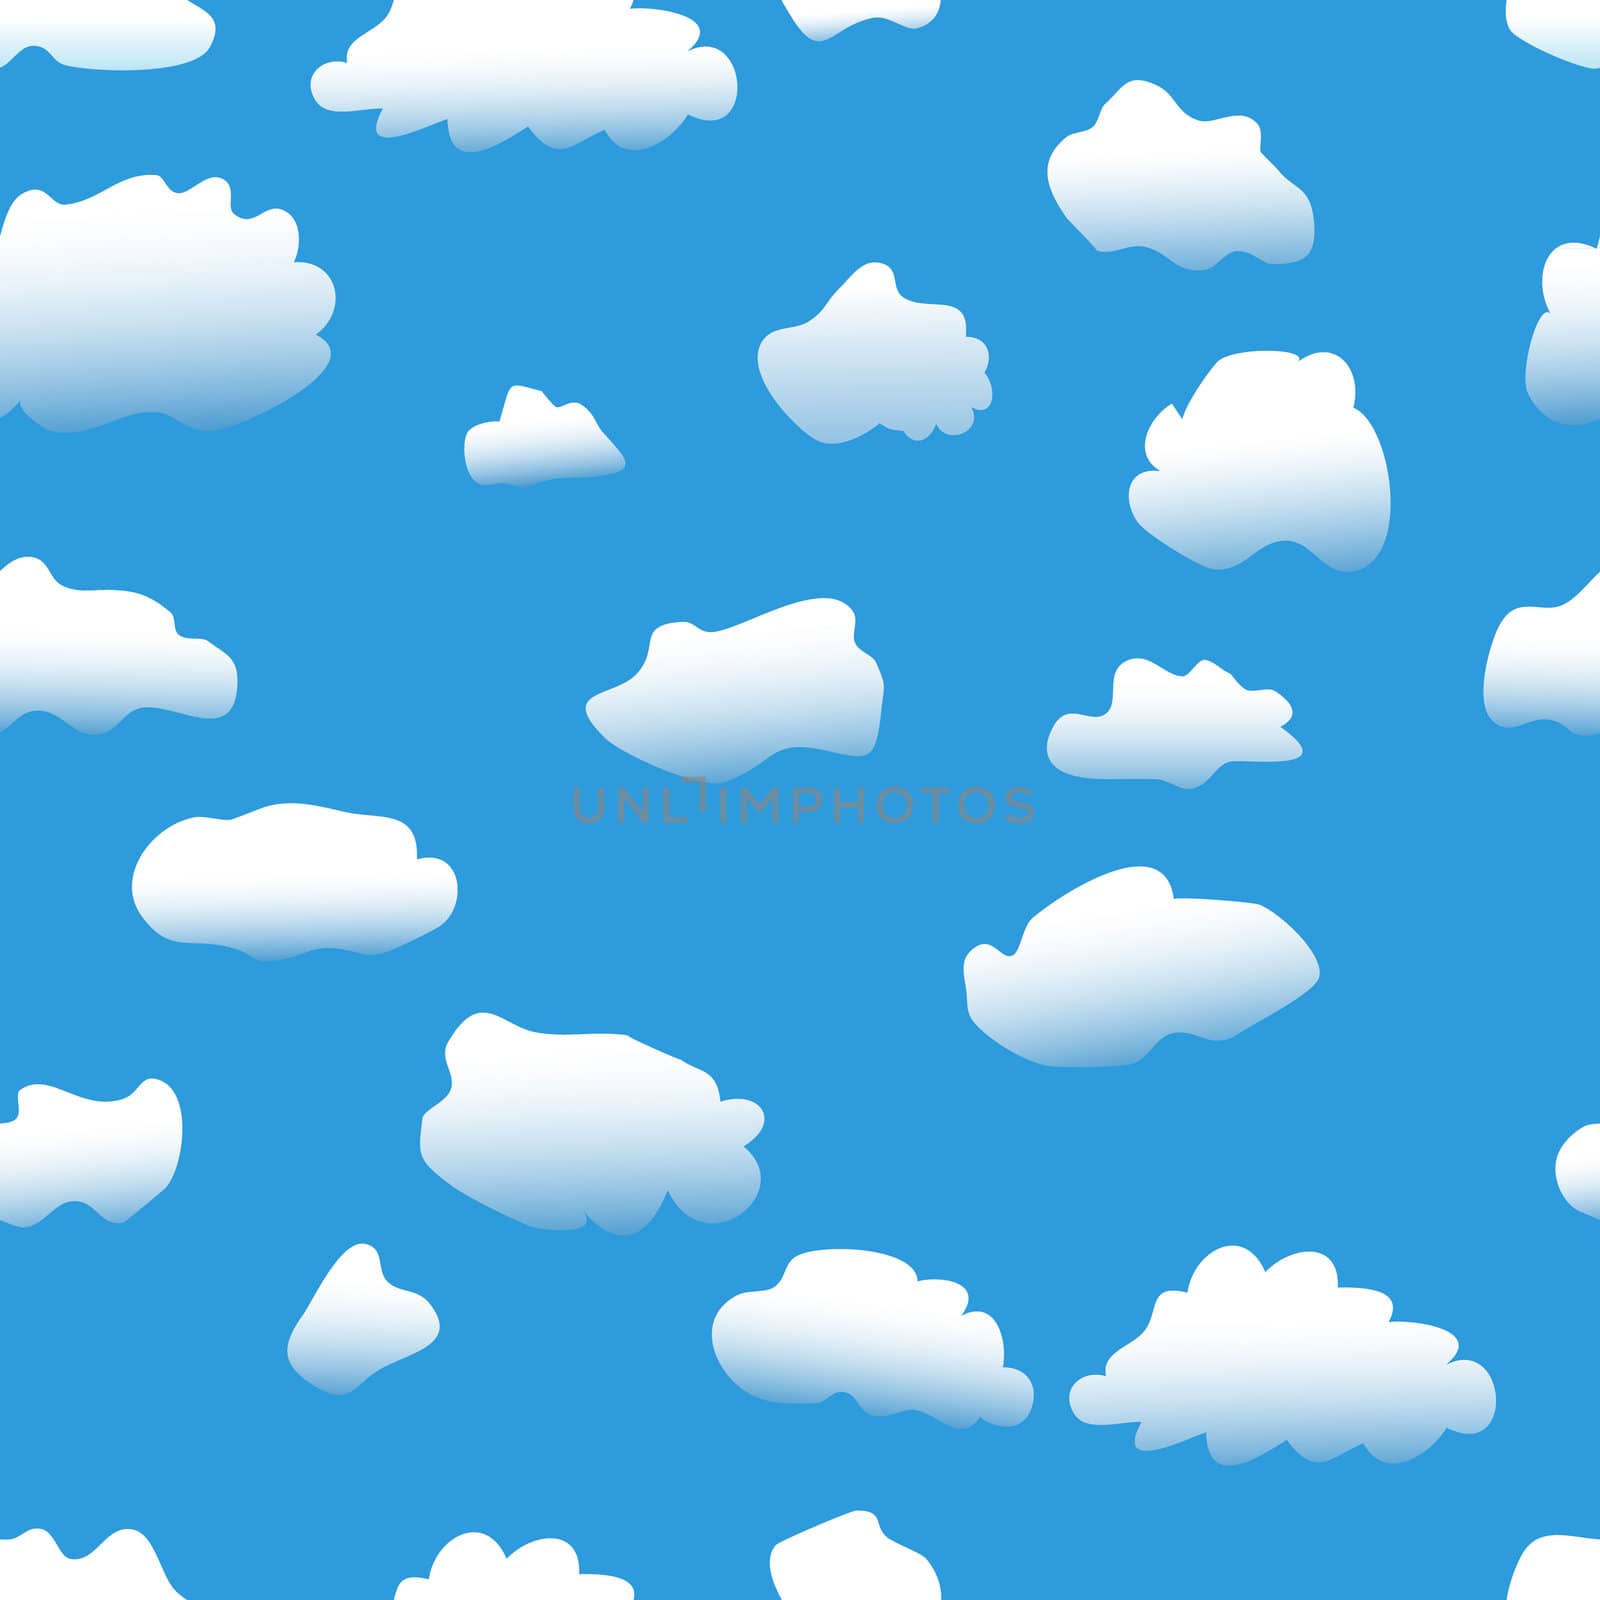 Clouds Background by smoki